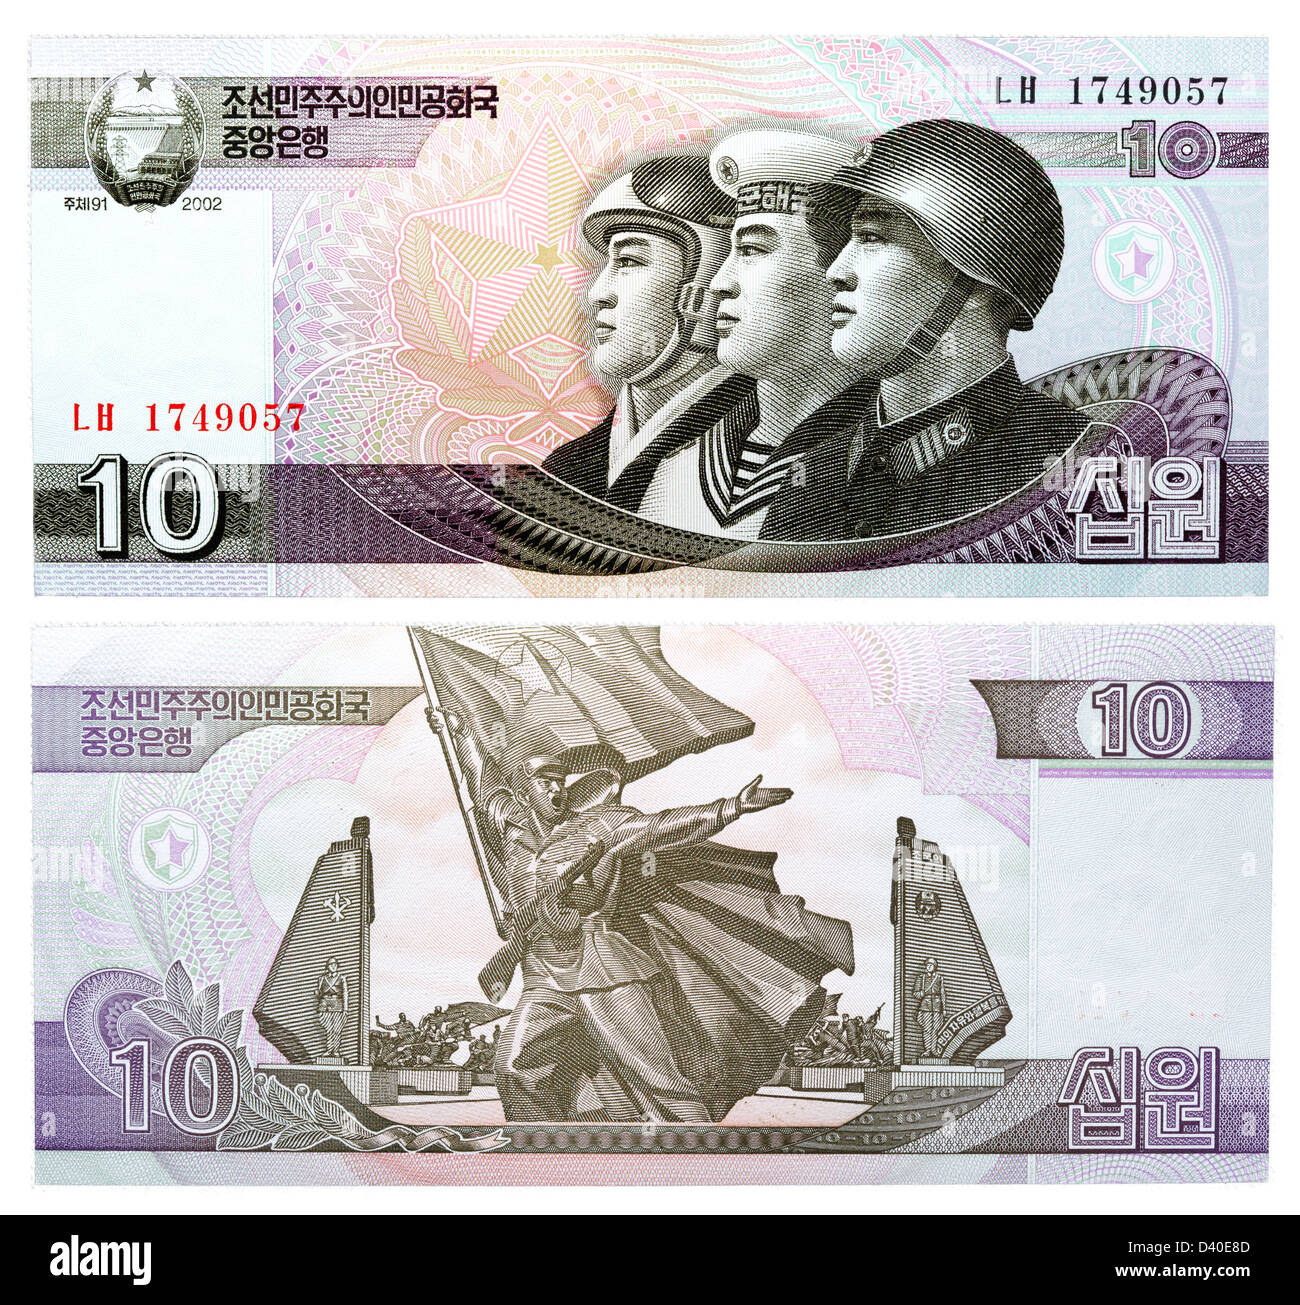 10 Ha vinto la banconota, tre uomini militare Air Force, della marina e dell'esercito, Corea del Nord, 2002 Foto Stock